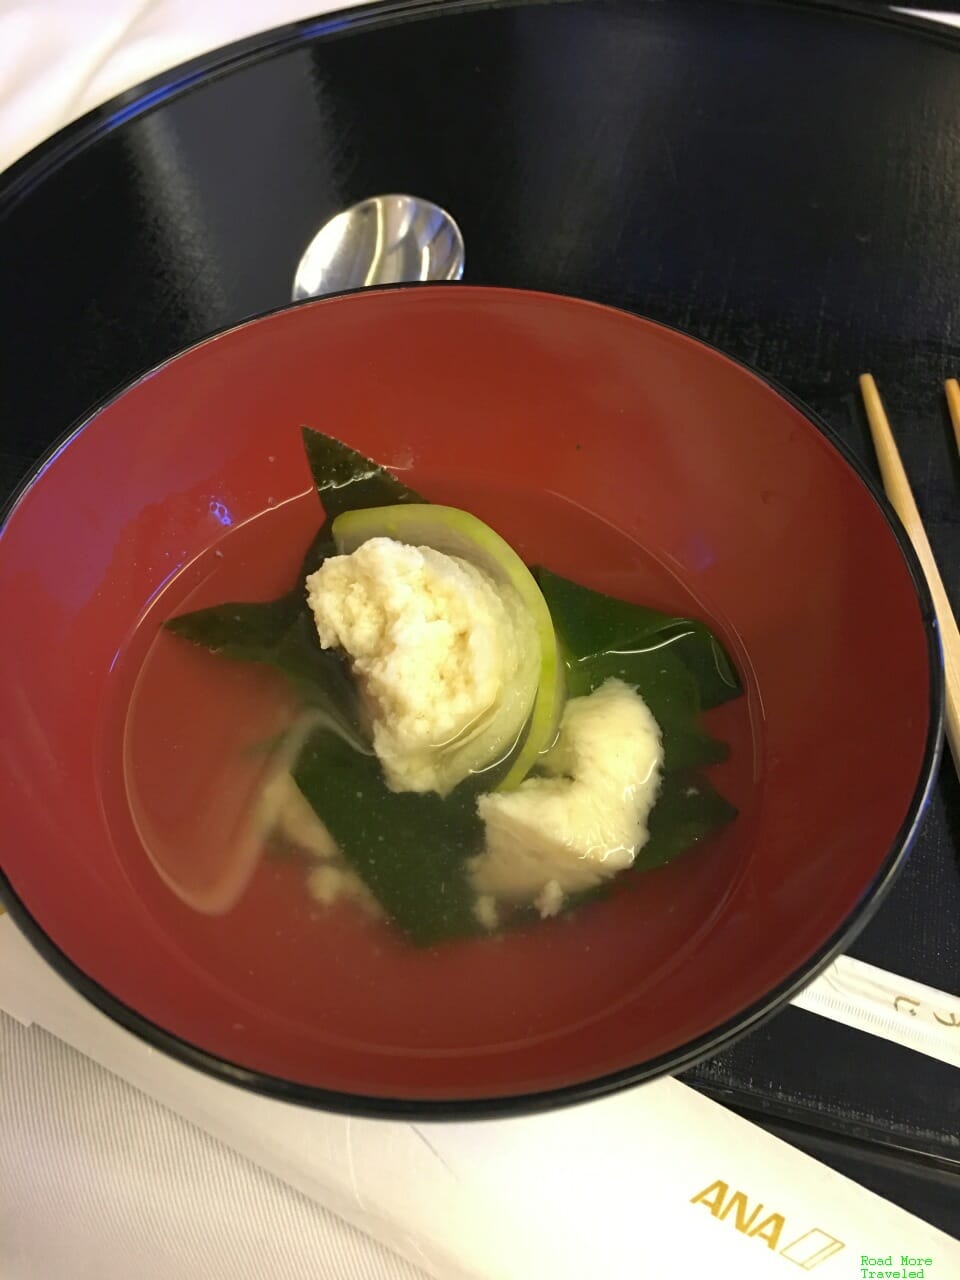 ANA F Japanese soup course